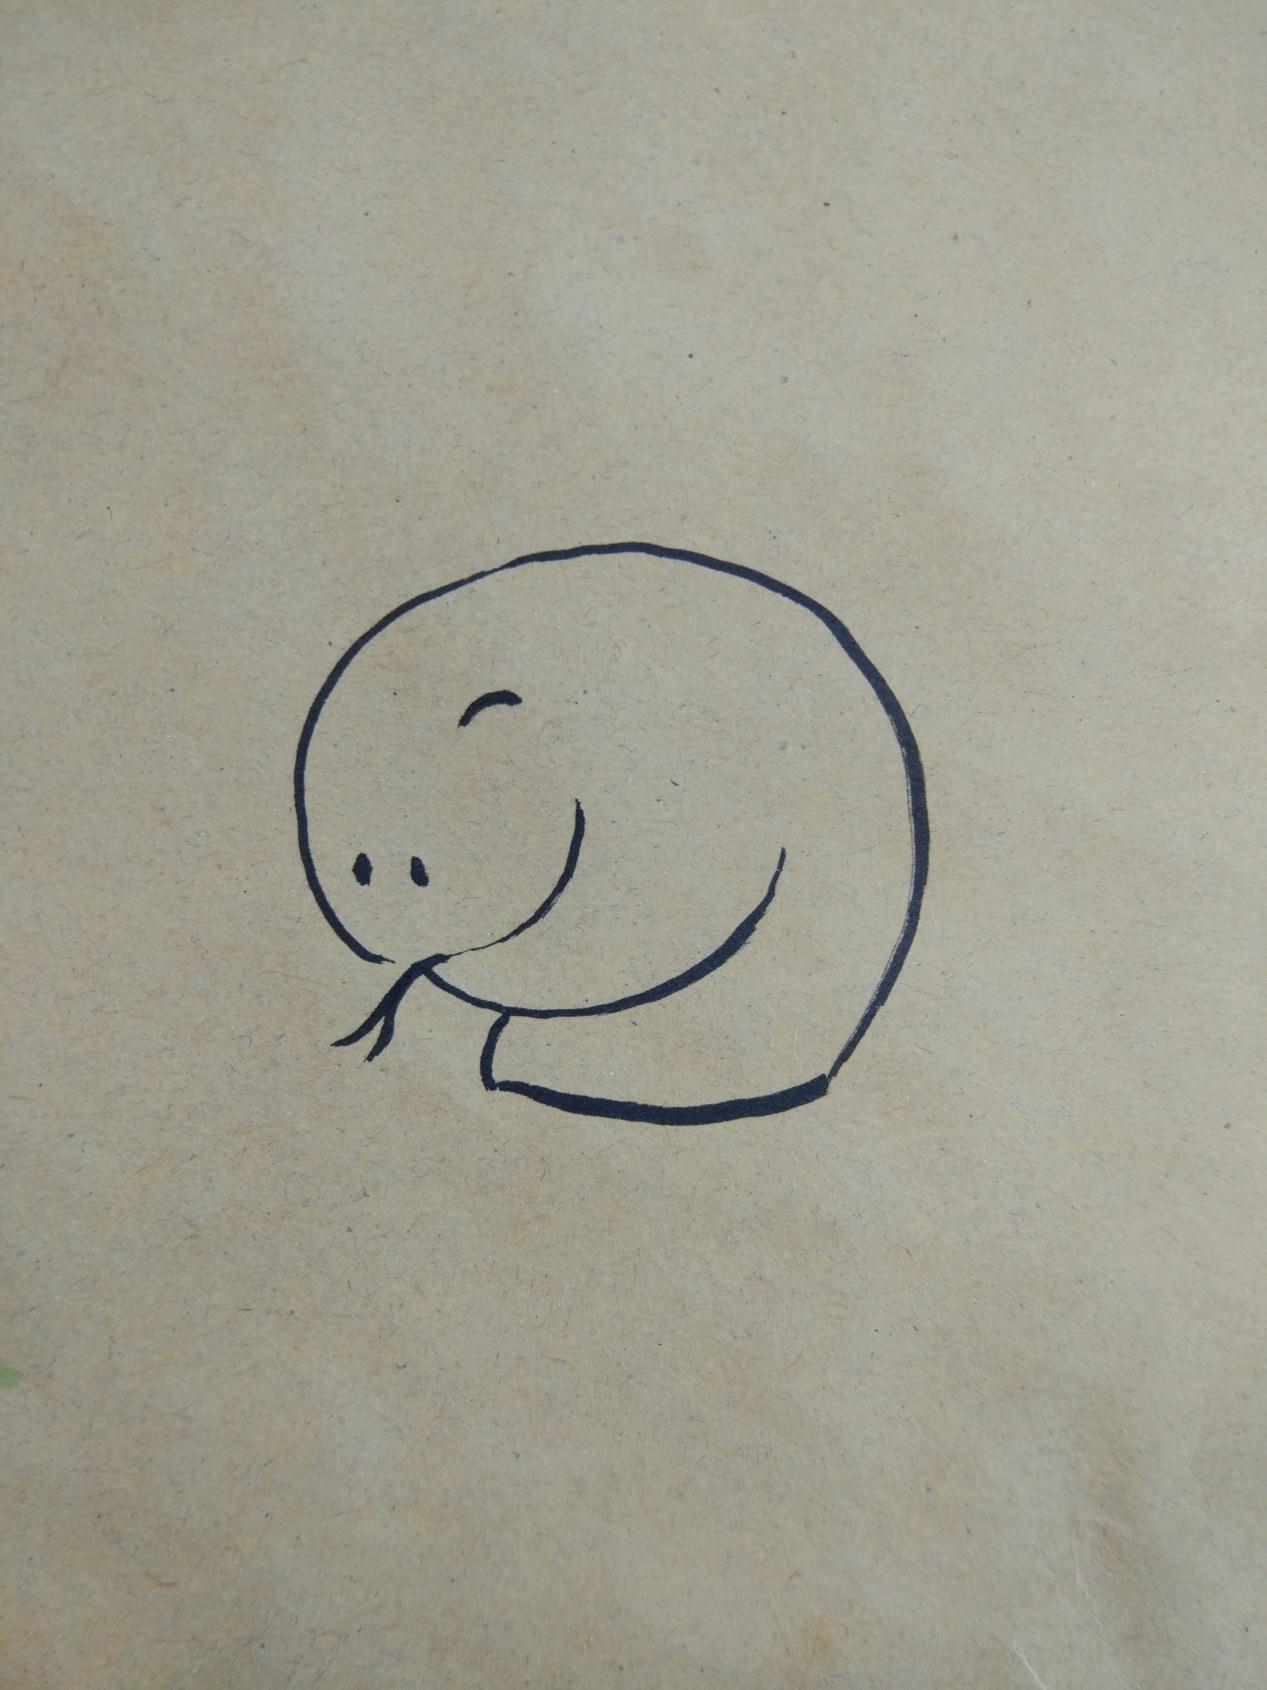 宋宋教你用牛皮纸和彩笔画简单可爱的卡通蛇